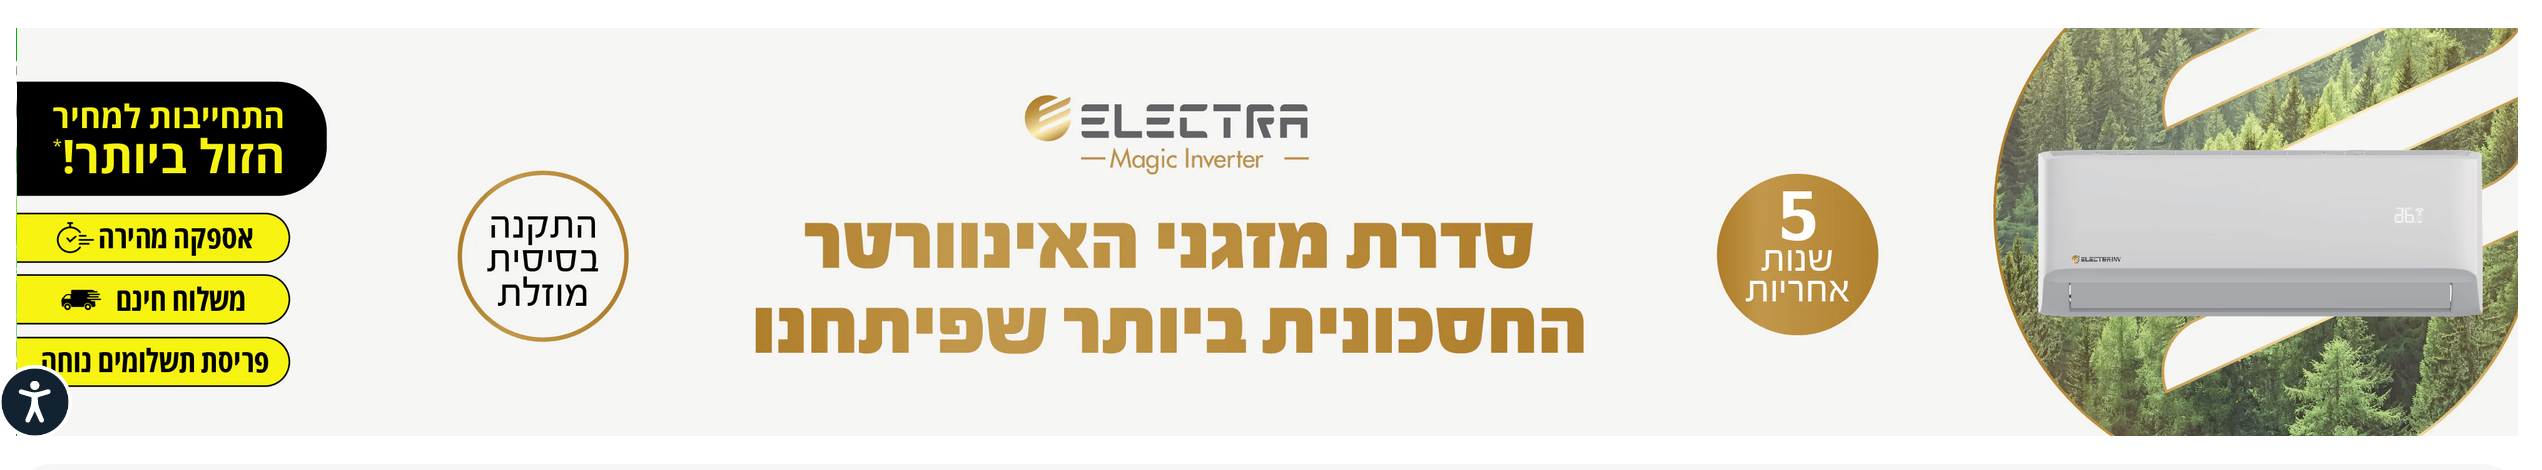 ELECTEA MAGIC INVERTER - סדרת מזגני האינוורטר החסכונית ביותר שפיתחנו 